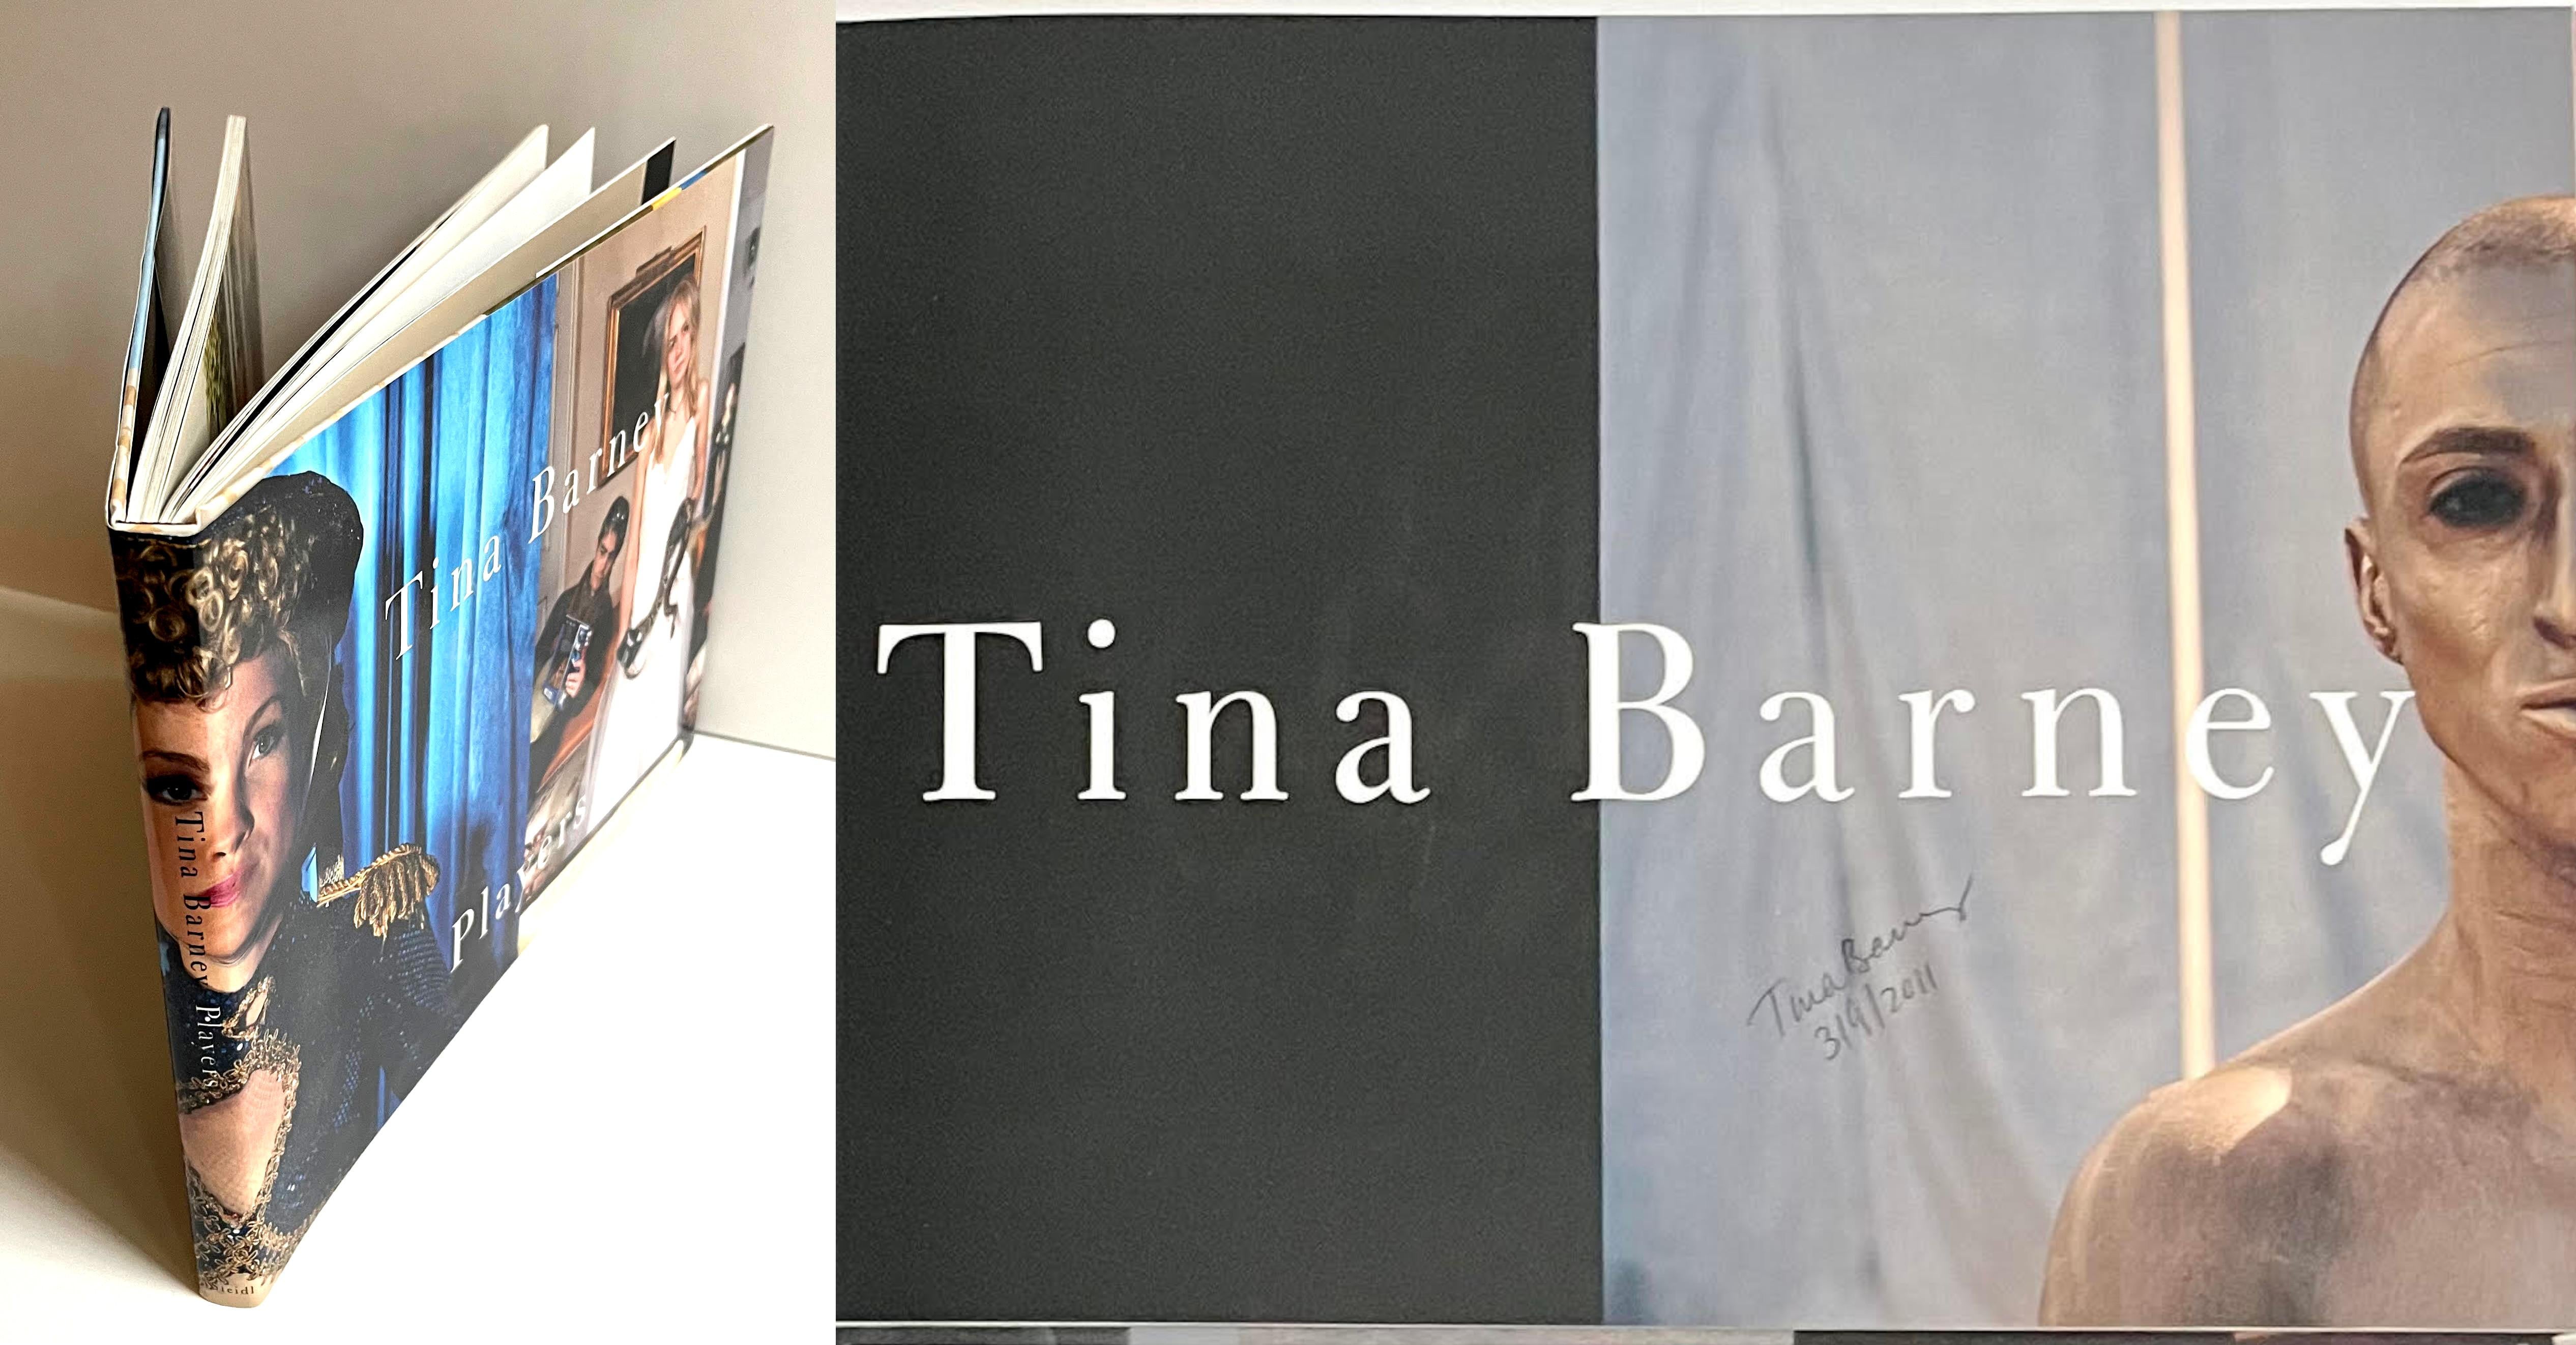 Tina Barney
Spieler (signiert und datiert von Tina Barney), 2010
Gebundene Monografie mit Schutzumschlag (handsigniert und datiert von Tina Barney)
Unterzeichnet und datiert am 3/9/2011 von Tina Barney
9 × 12 × 3/4 Zoll

Signiert und datiert